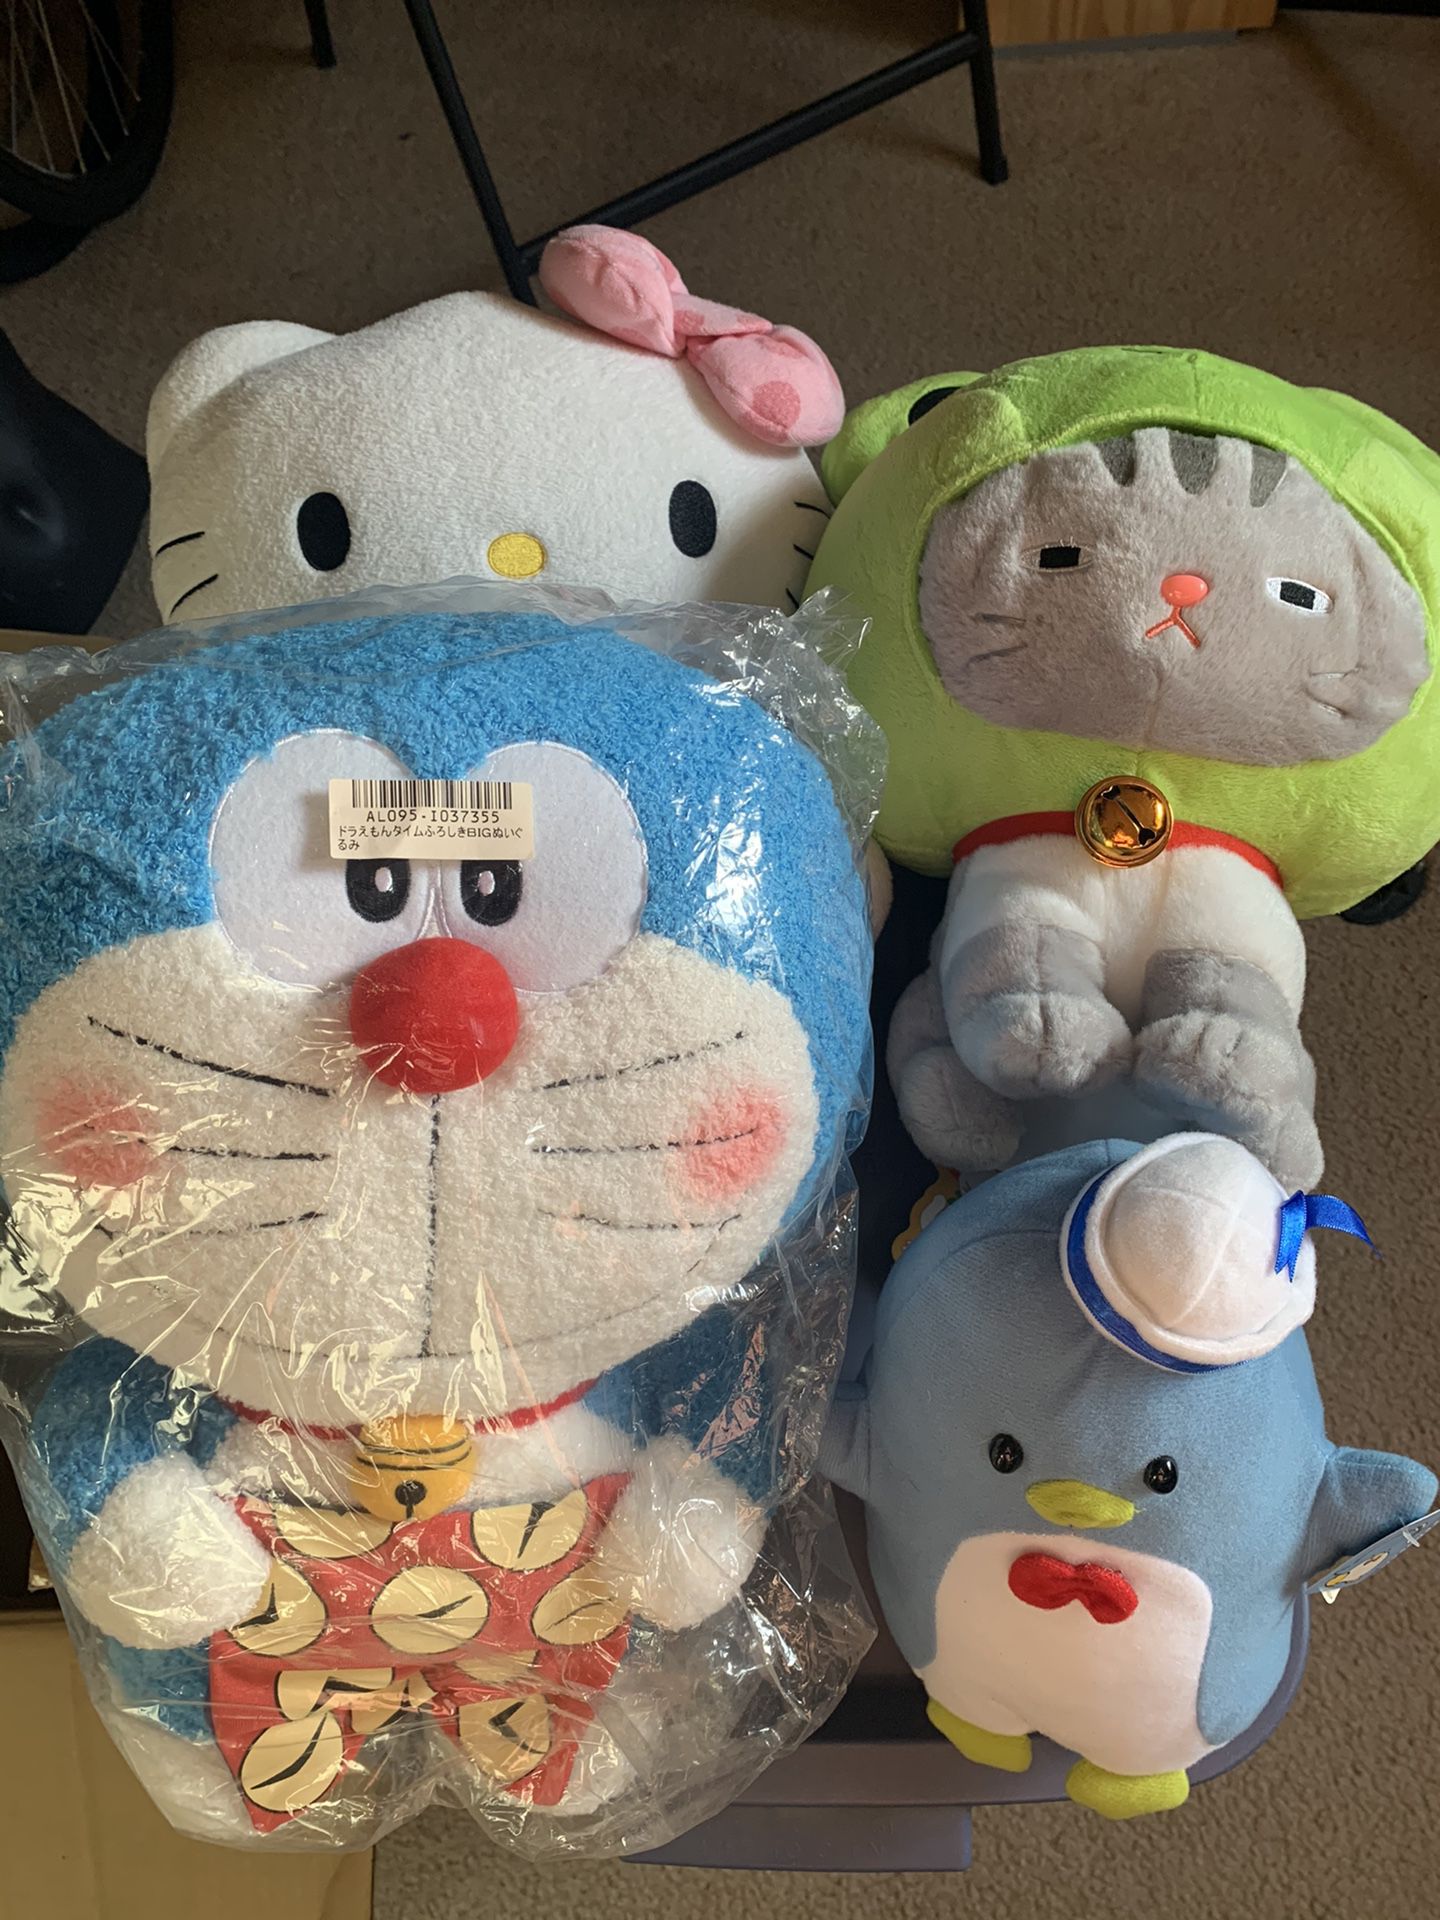 Hello kitty doraemon stuffed animals